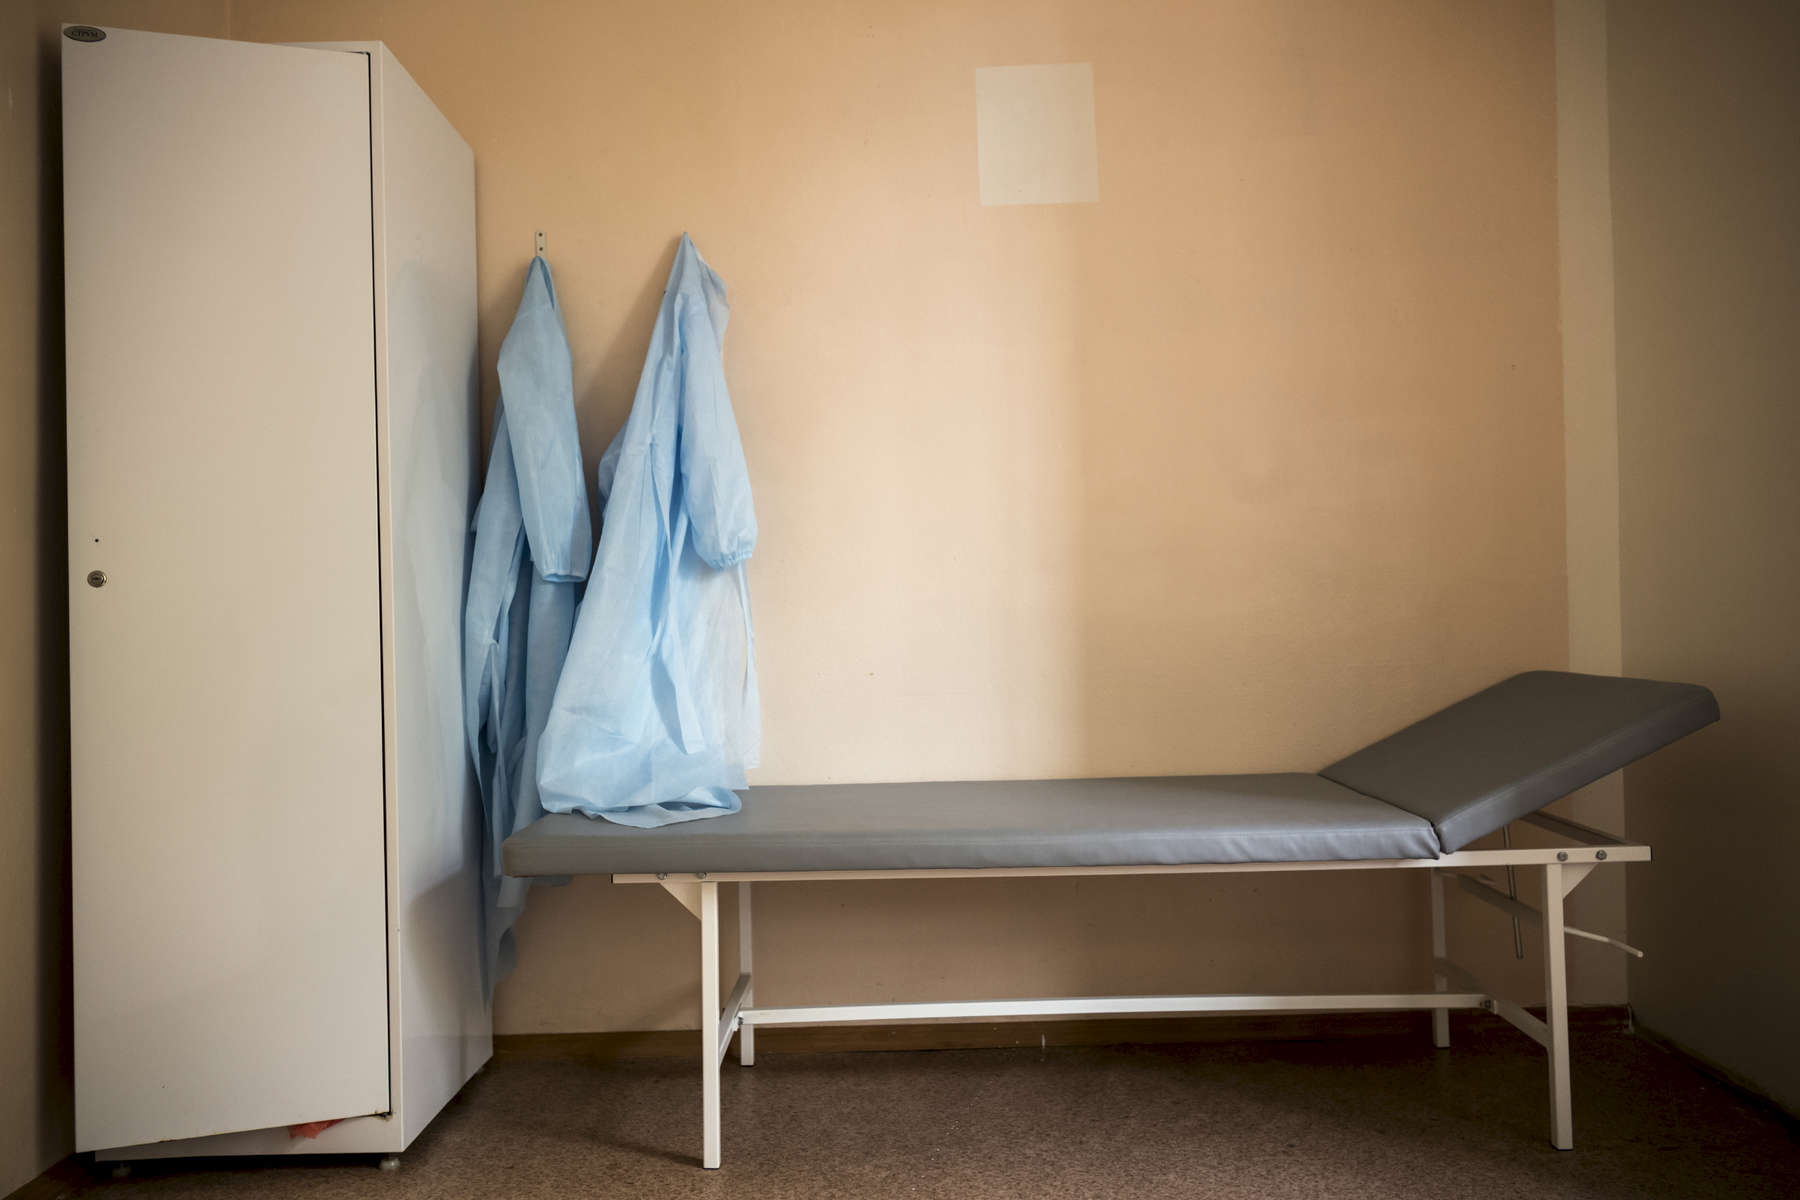 Pièce qui permet au corps médical de rencontrer leurs patients avec plus d’intimité. Institut Républicain de la TB, Minsk, Bielorussie, 2018.